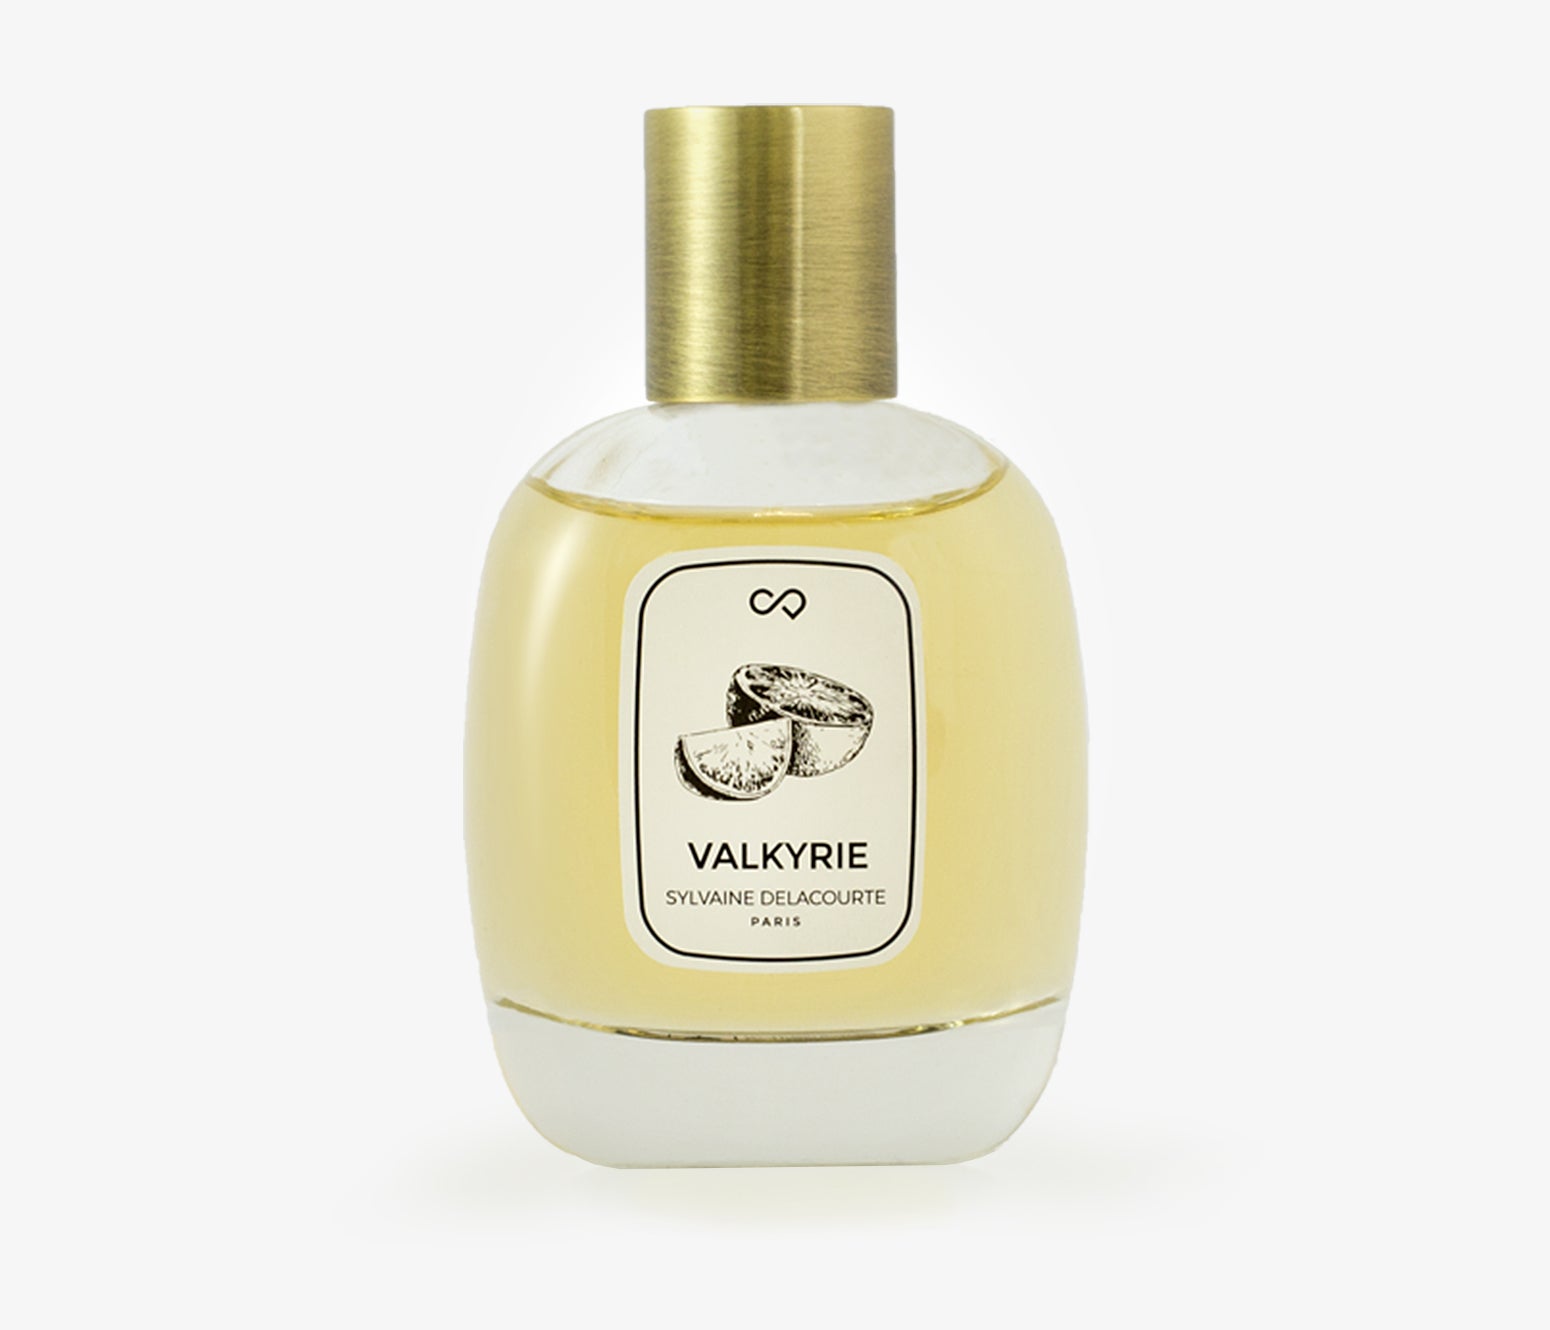 Sylvaine Delacourte - Valkyrie - 100ml - DVA001 - product image - Fragrance - Les Senteurs